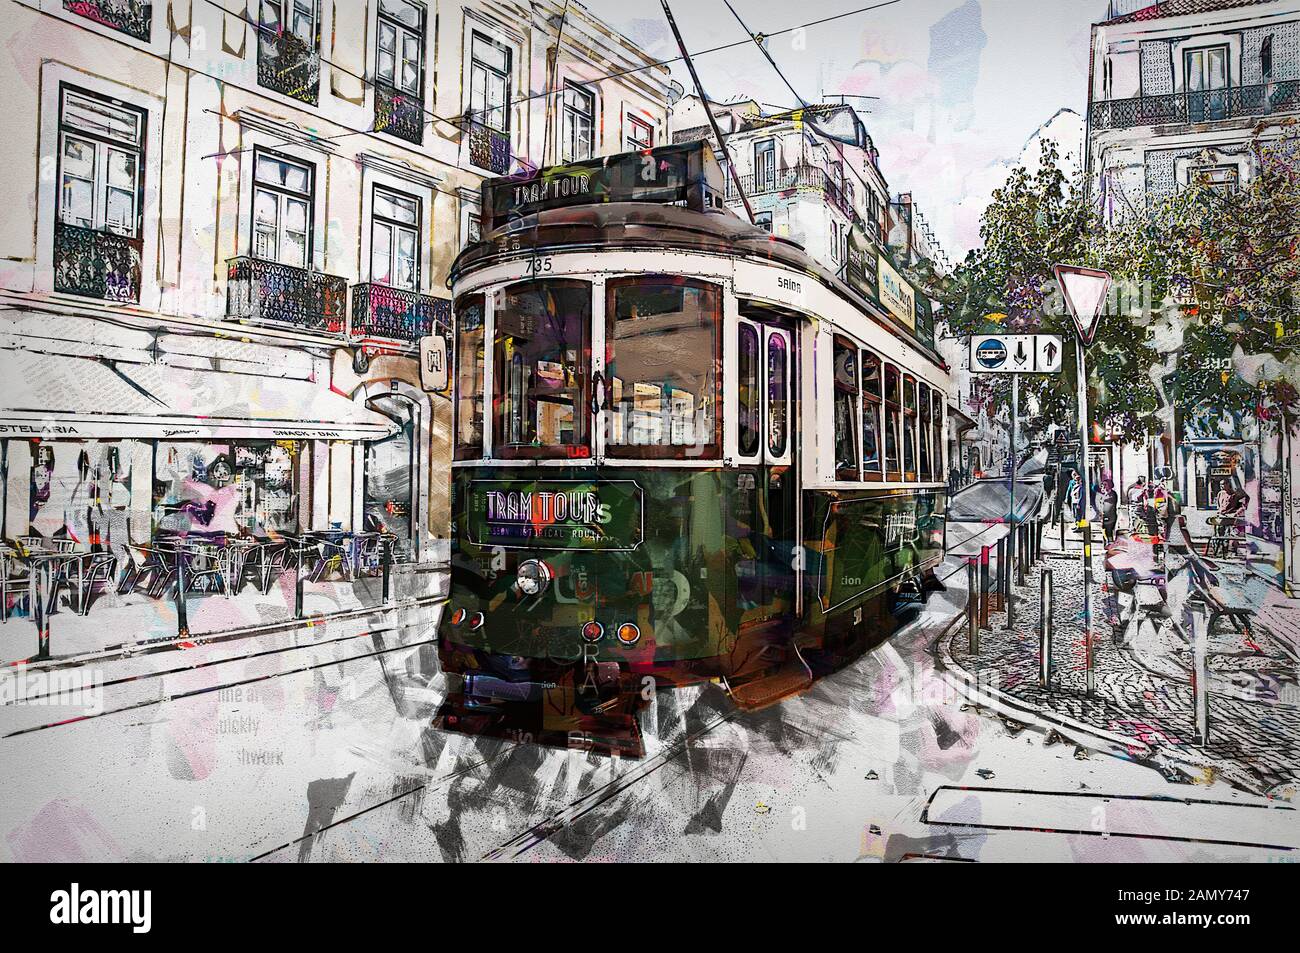 Immagine digitale migliorata di un tram verde nelle strette strade affollate di Lisbona, Portogallo Foto Stock